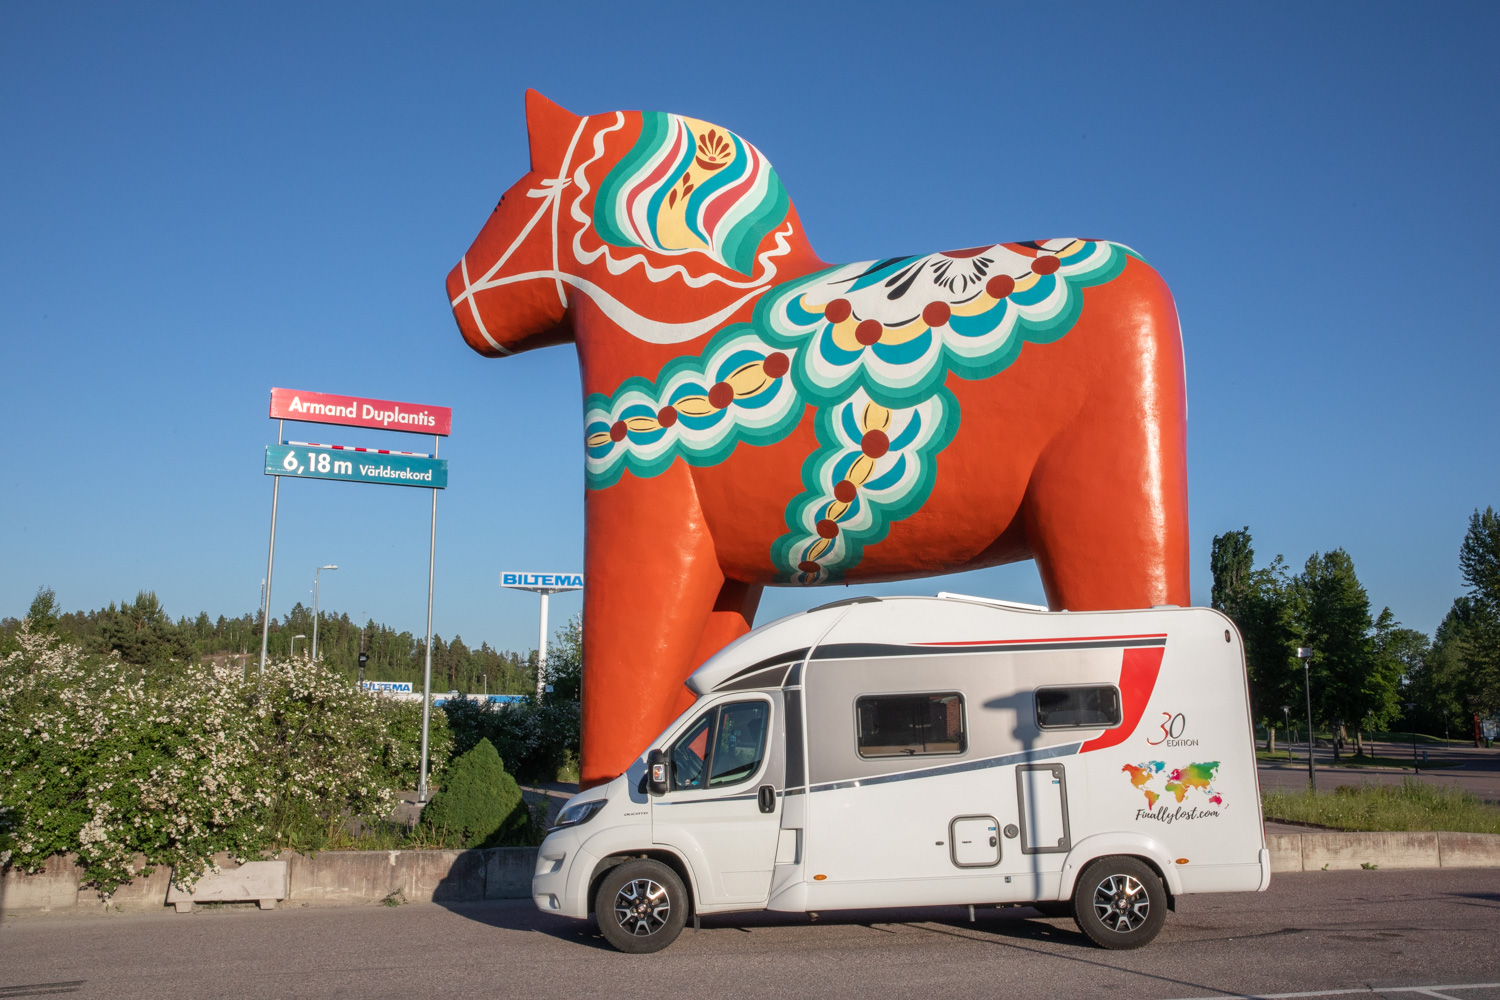 En husbil står framför den stora dalahästen i Avesta. Bredvid dalahästen finns en skylt med stavhopparen Armand Duplantis världsrekordhöjd, 6,18. Den höjden går upp till ungefär halva dalahästen.